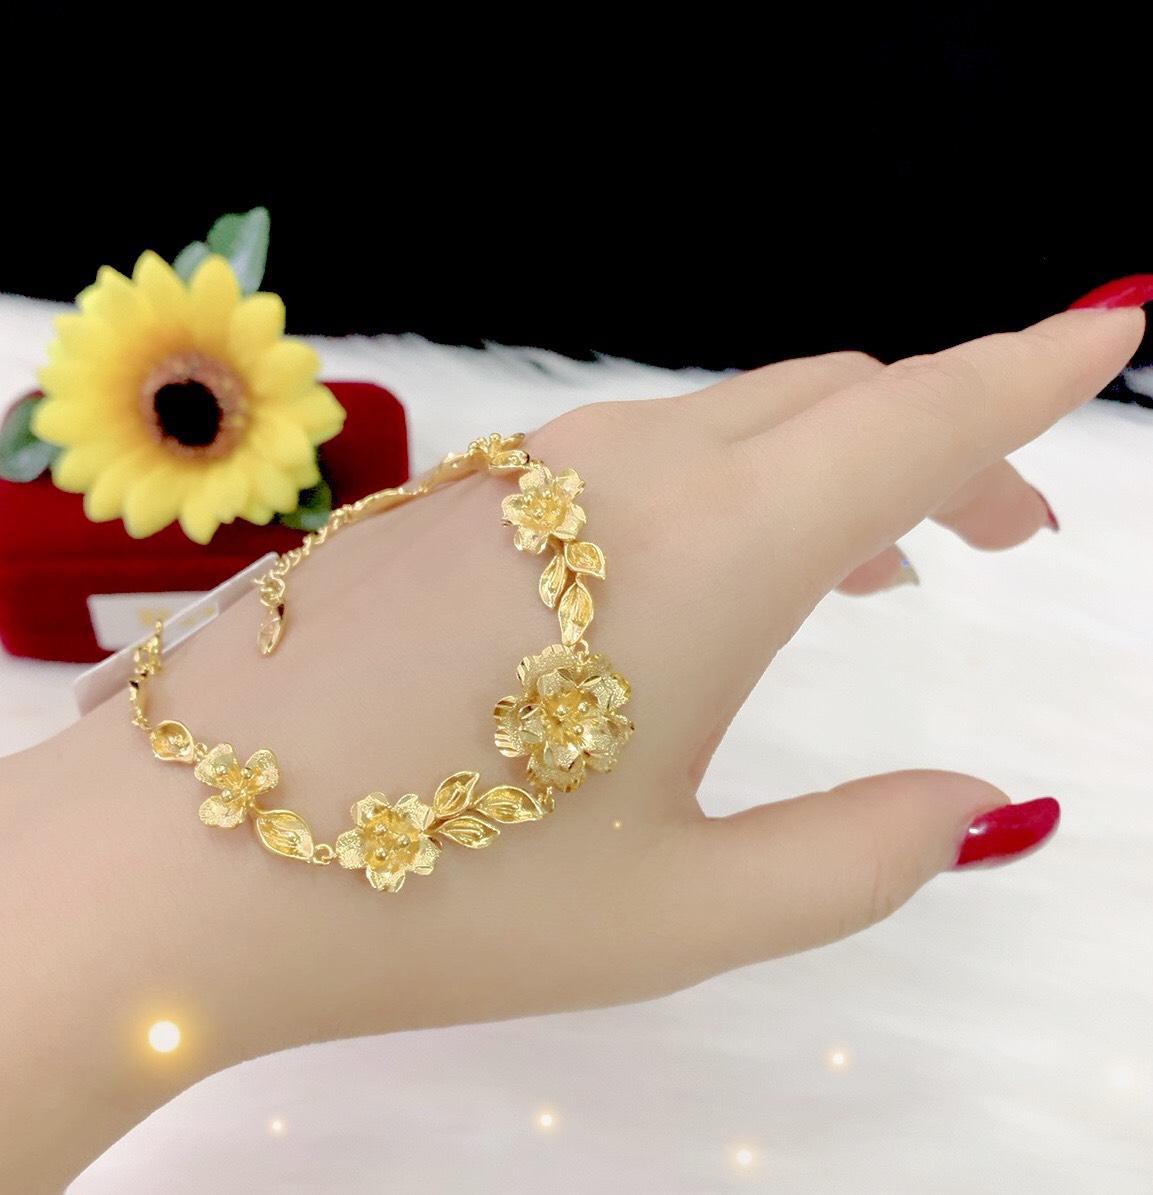 Kết hợp vẻ đẹp của vàng cùng với hoa mai tượng trưng cho tình yêu và sự may mắn, \